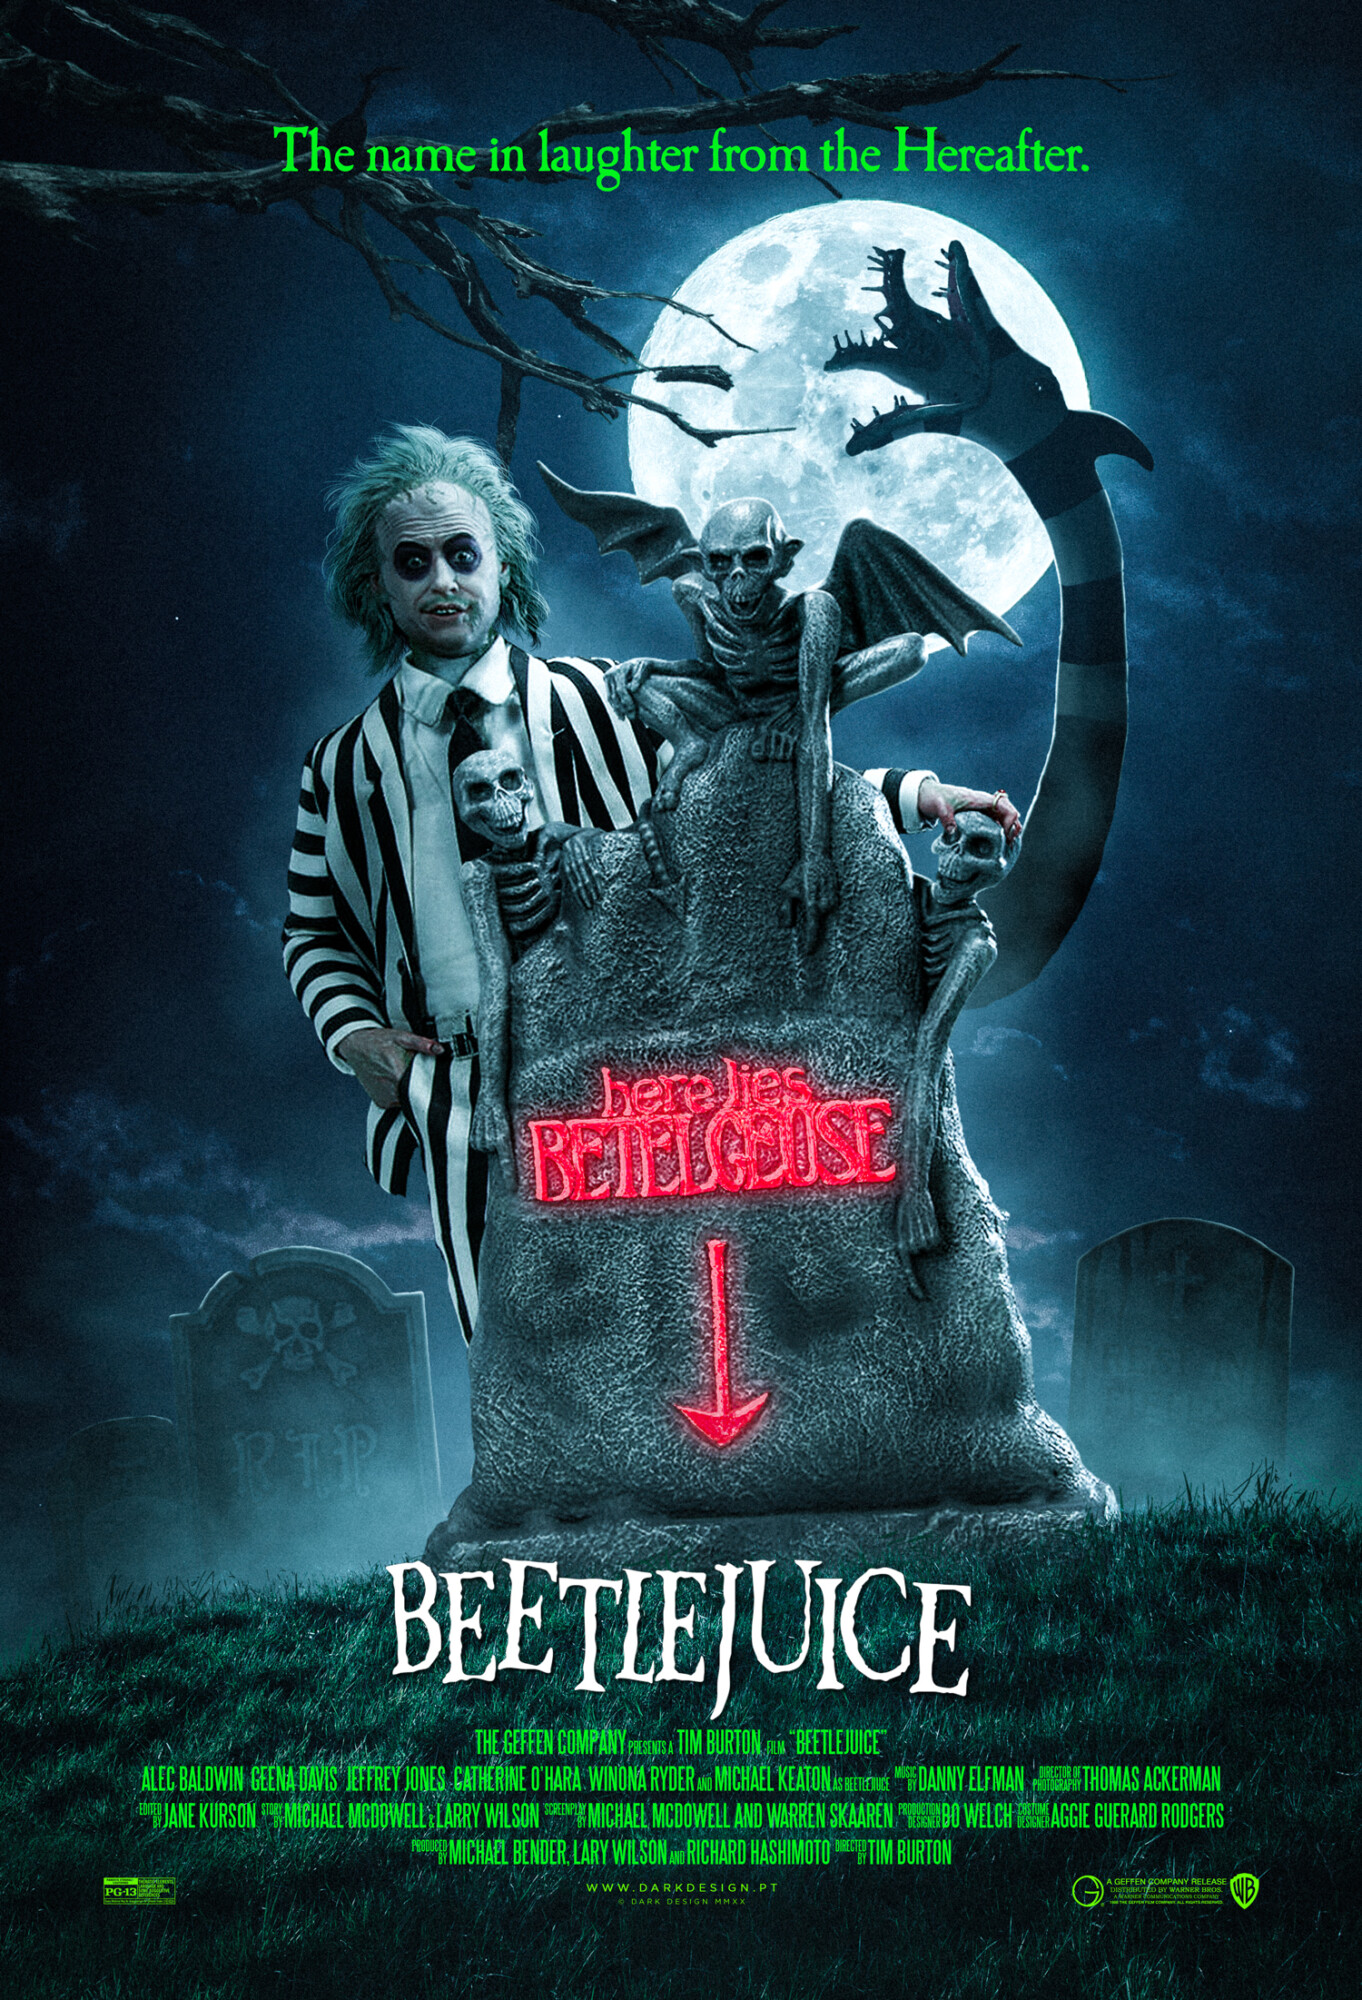 Beetlejuice | Darkdesign | PosterSpy